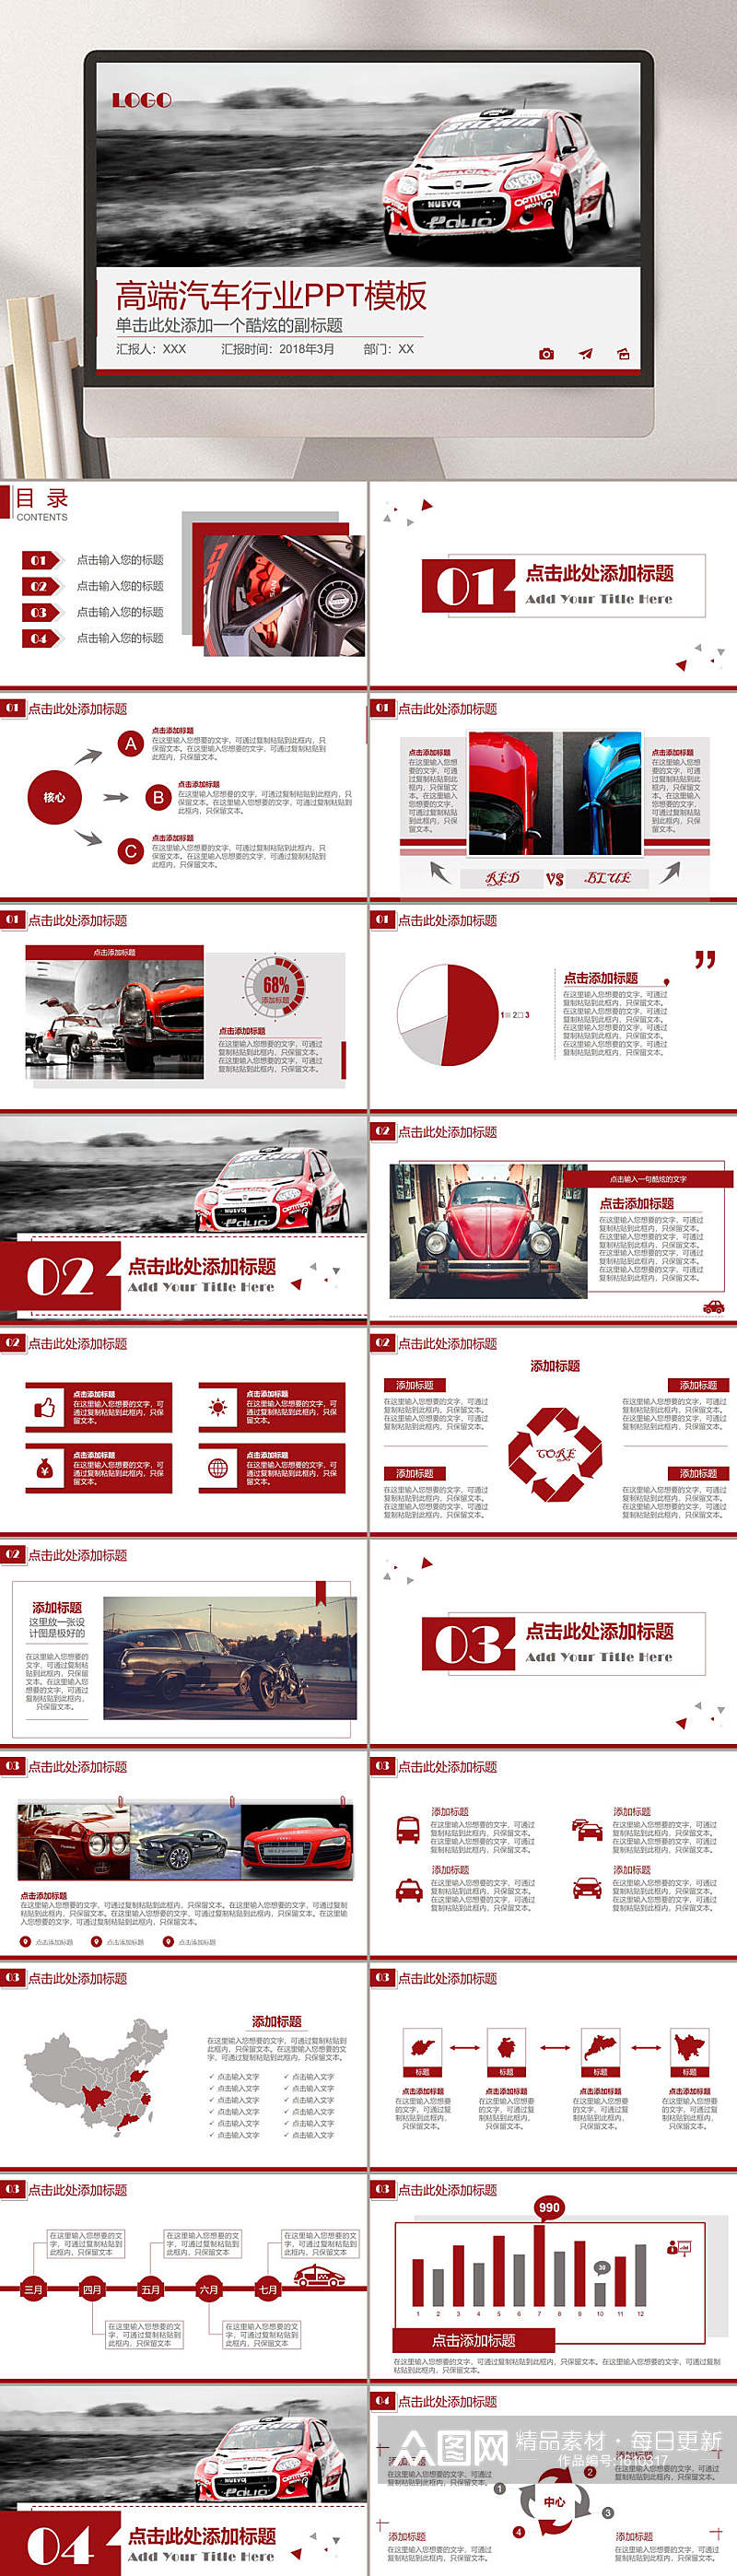 简约红色主题汽车行业营销PPT模板素材